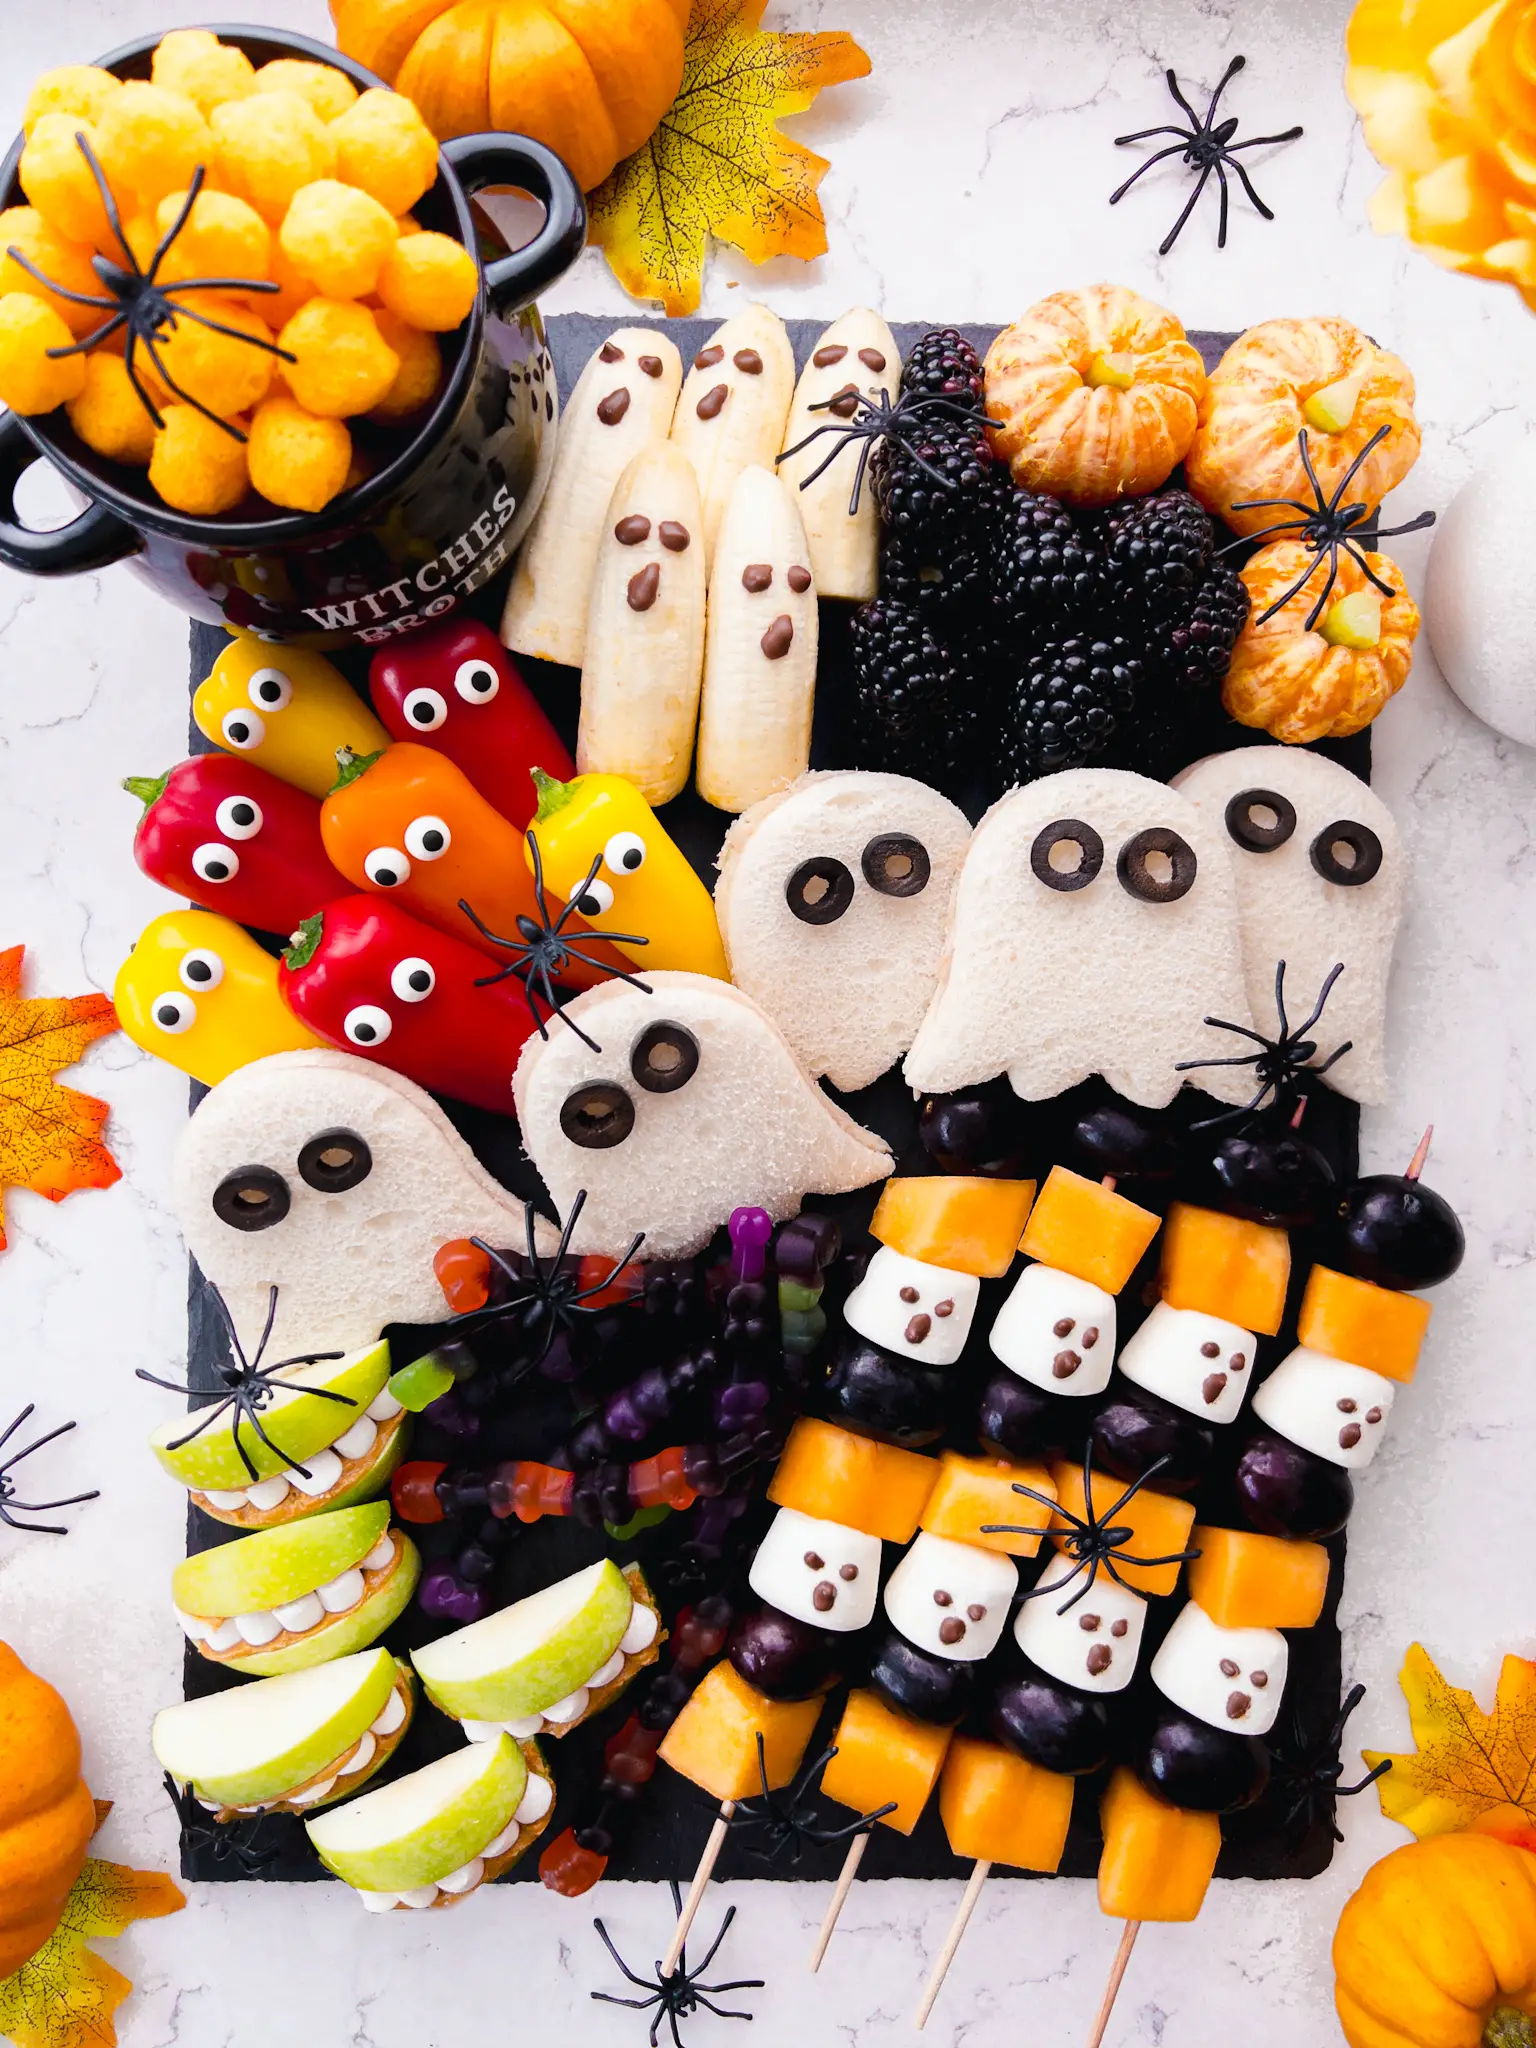 Halloween Snack Board for kids - cute spooky snacks